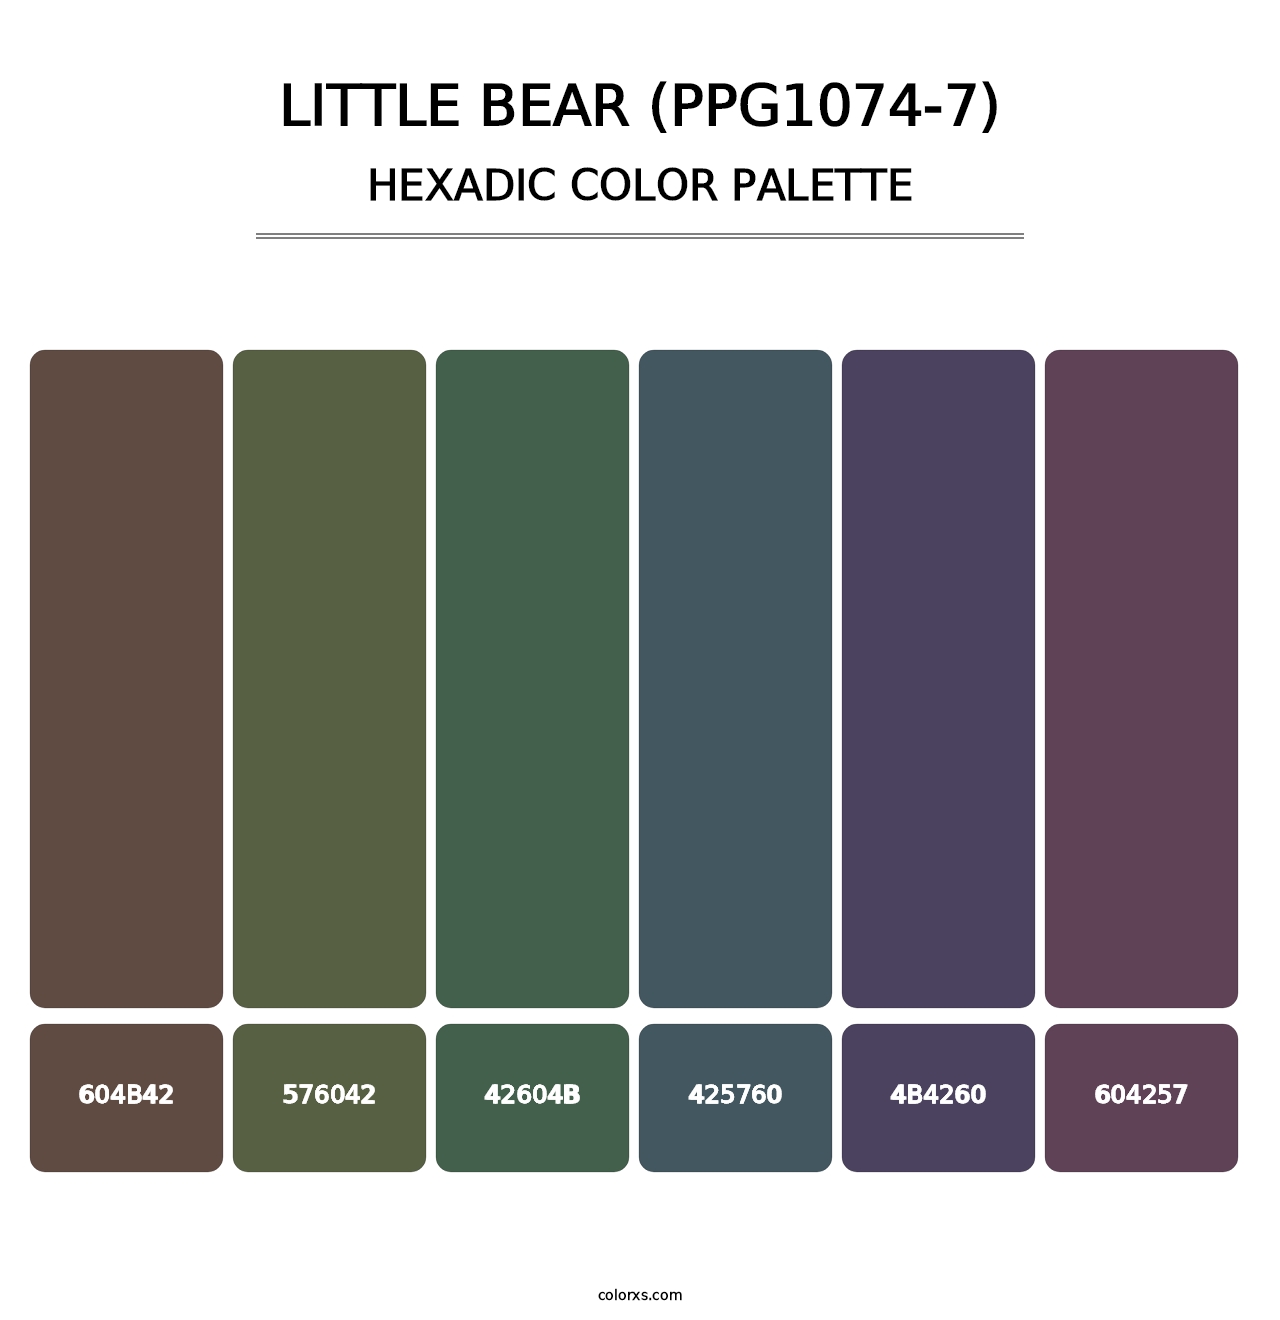 Little Bear (PPG1074-7) - Hexadic Color Palette